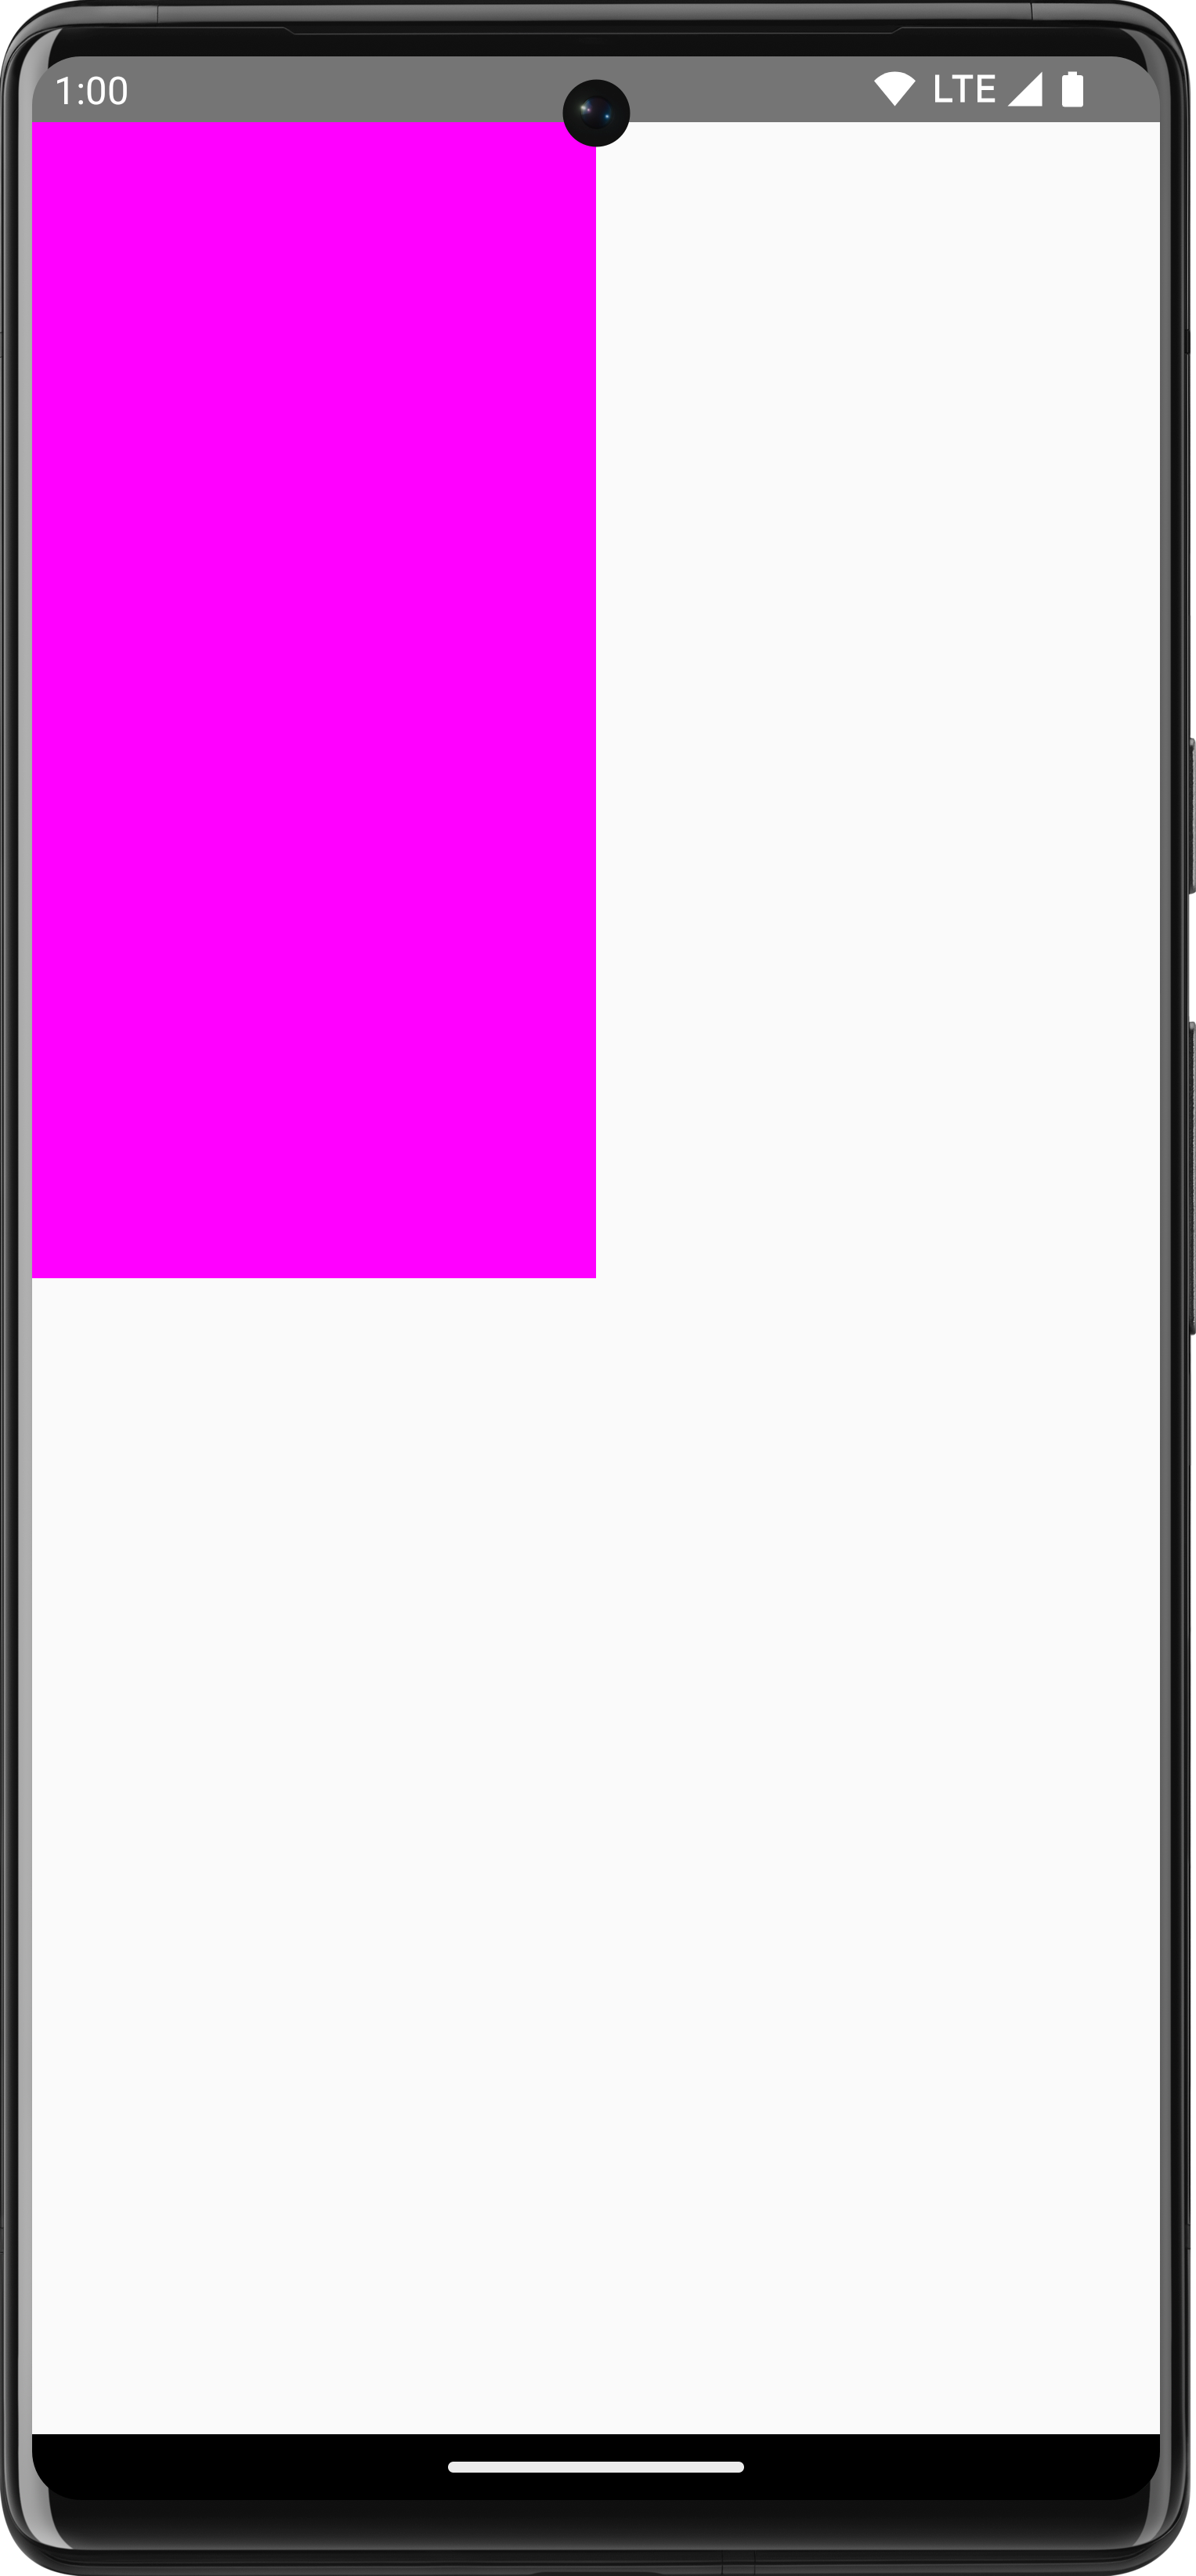 Hình chữ nhật màu hồng được vẽ trên nền trắng chiếm 1/4 màn hình